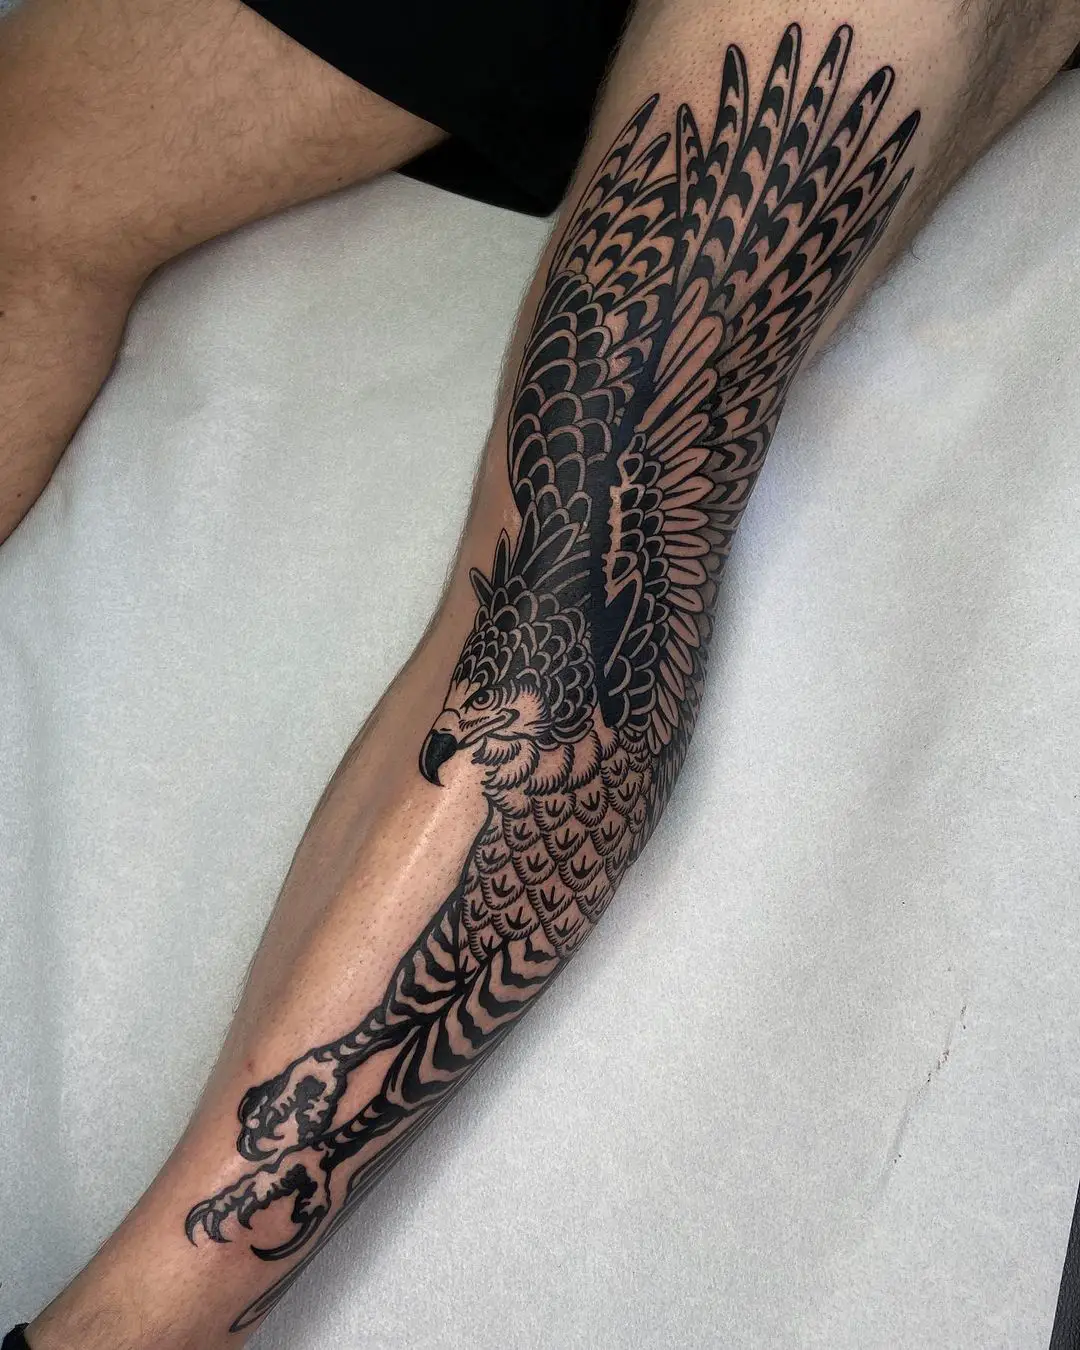 Full leg bird tattoo by danielsnacks